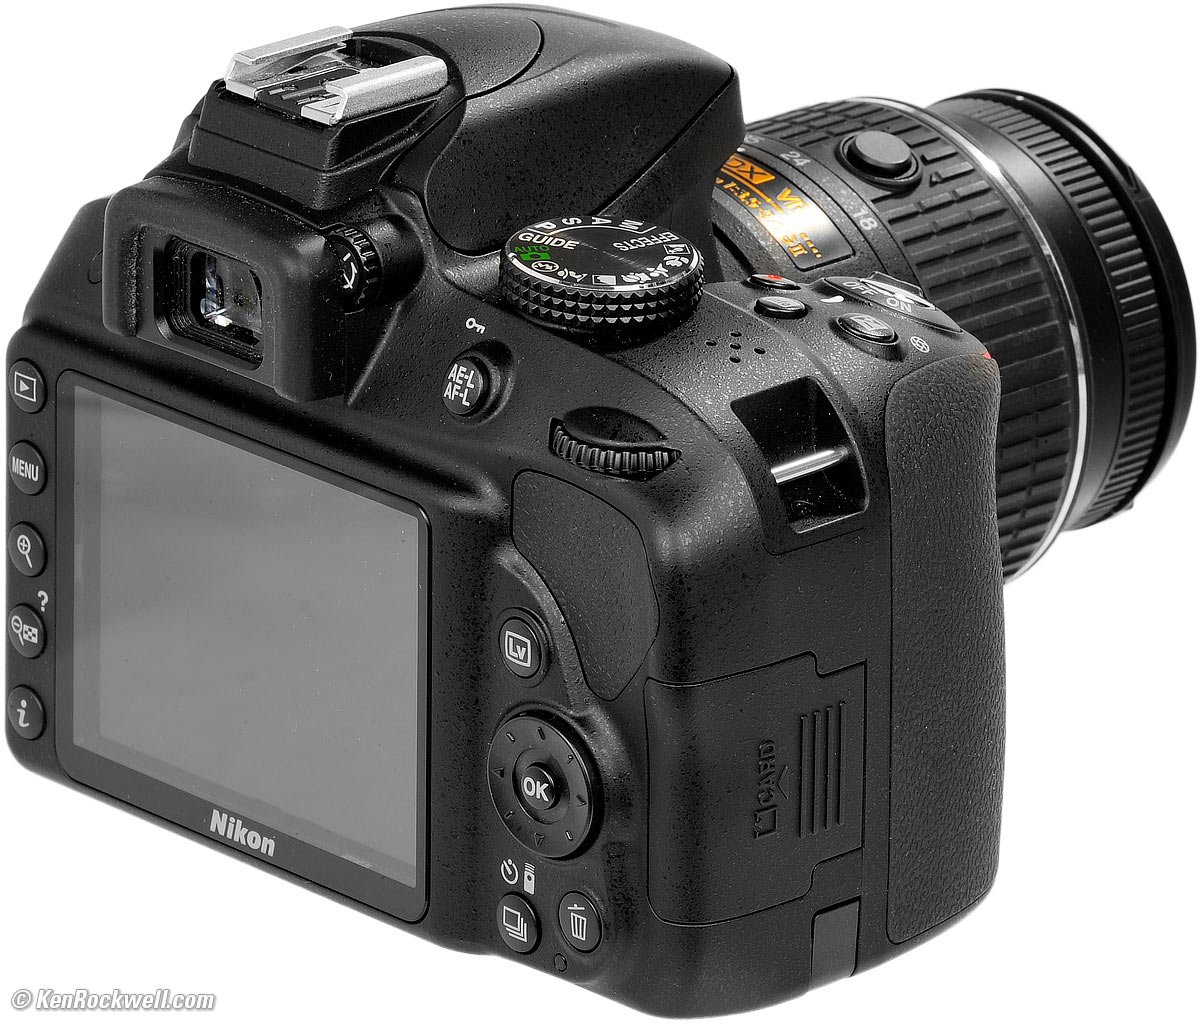 Arte Desventaja Escudero Nikon D3300 Review